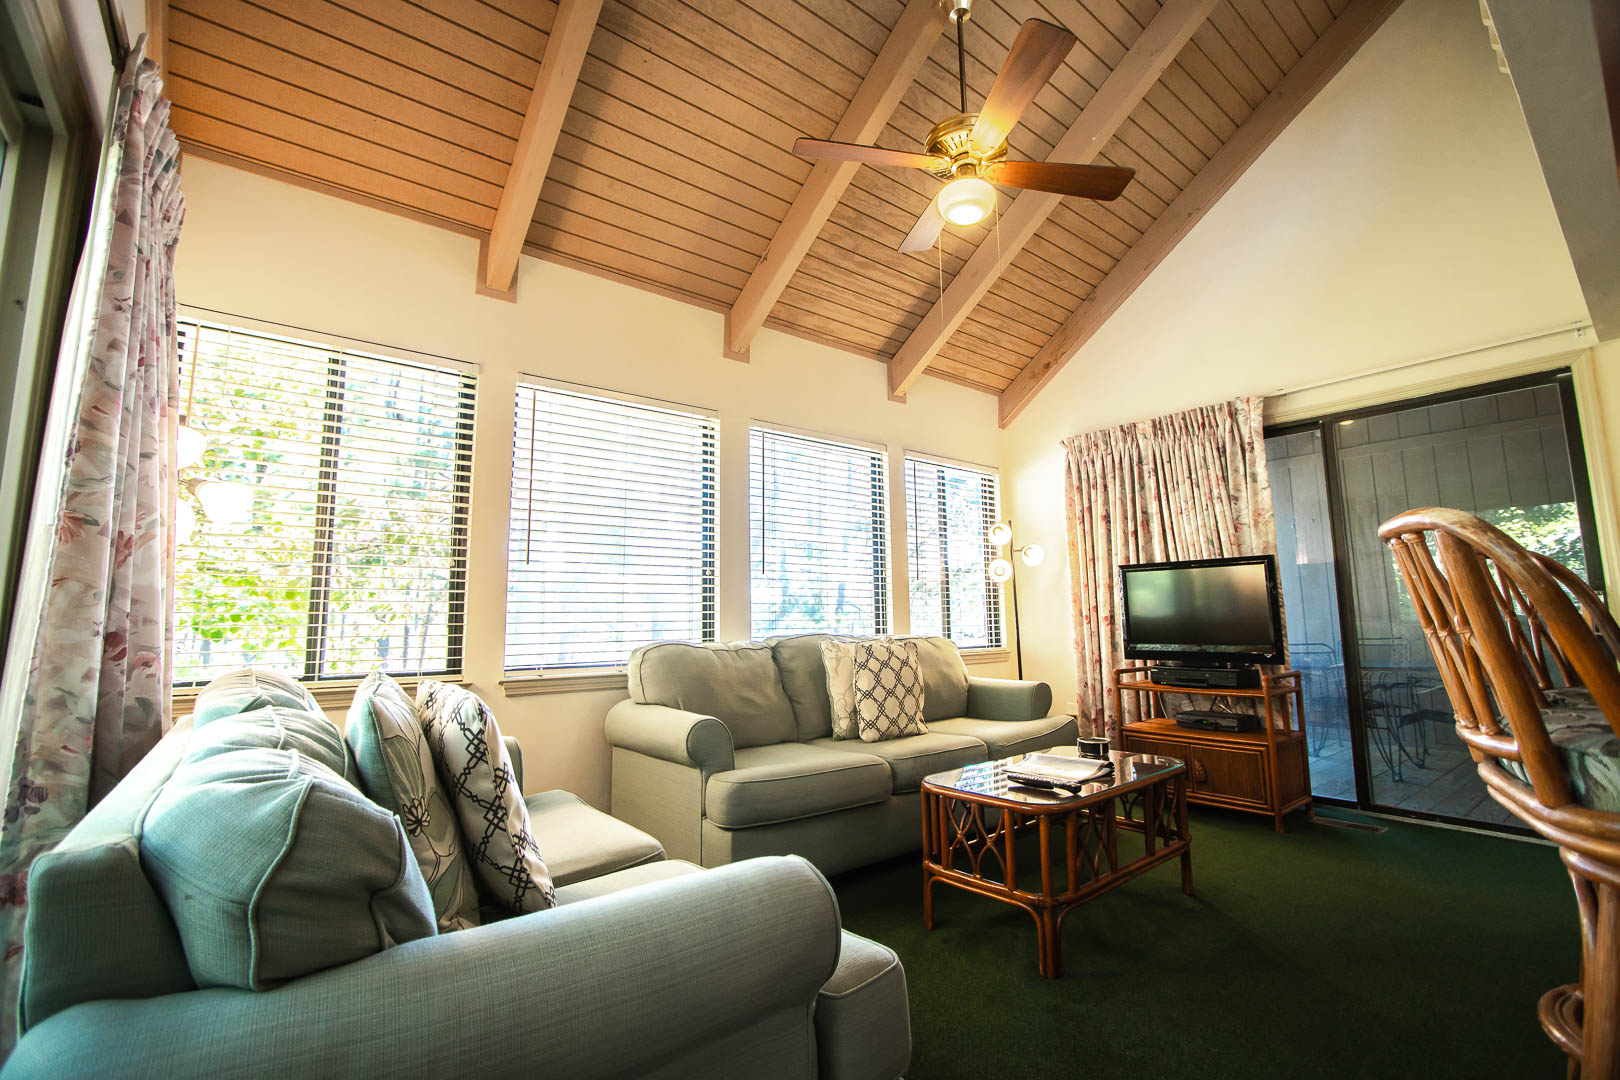 A cozy living room area at VRI's Sandcastle Cove in New Bern, North Carolina.